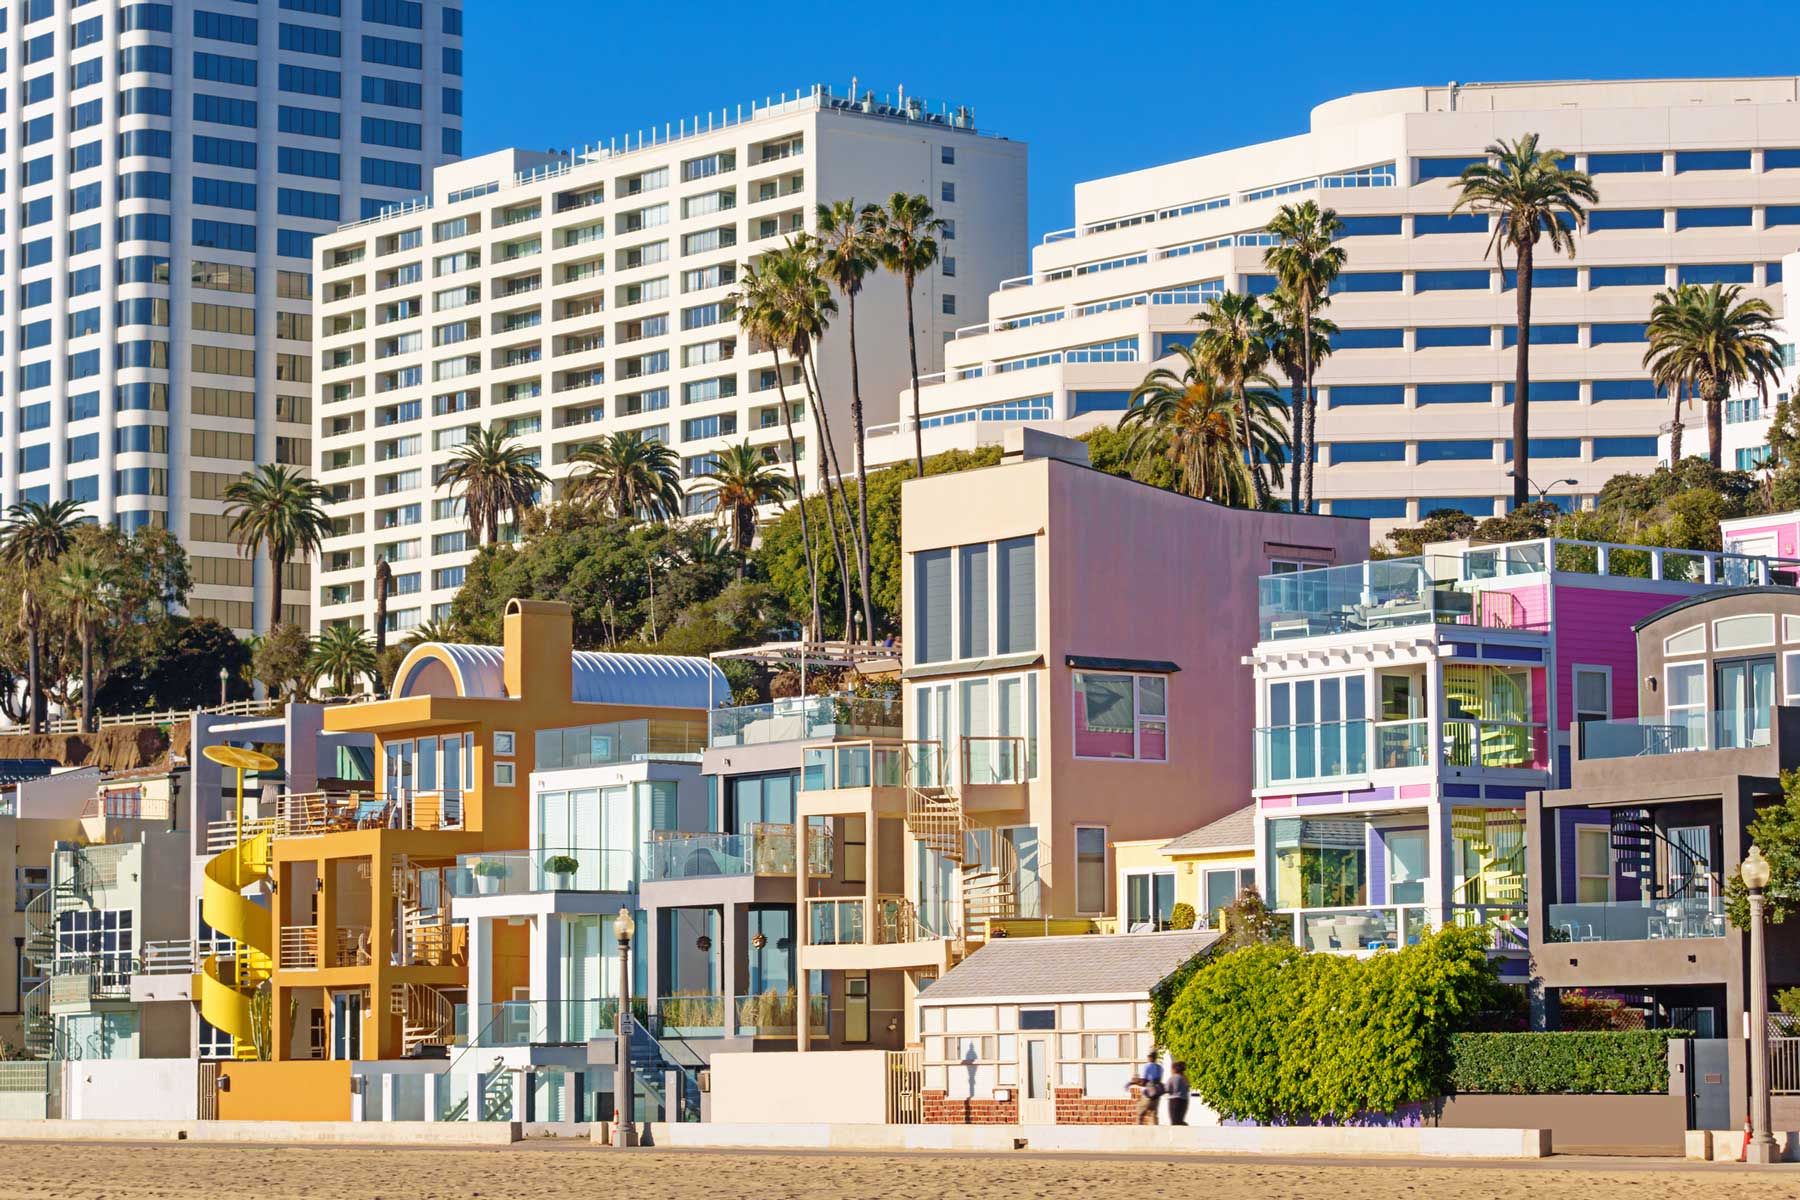 Stock Foto von bunten Strandhäusern und Hotels in Santa Monica Kalifornien USA an einem sonnigen Tag